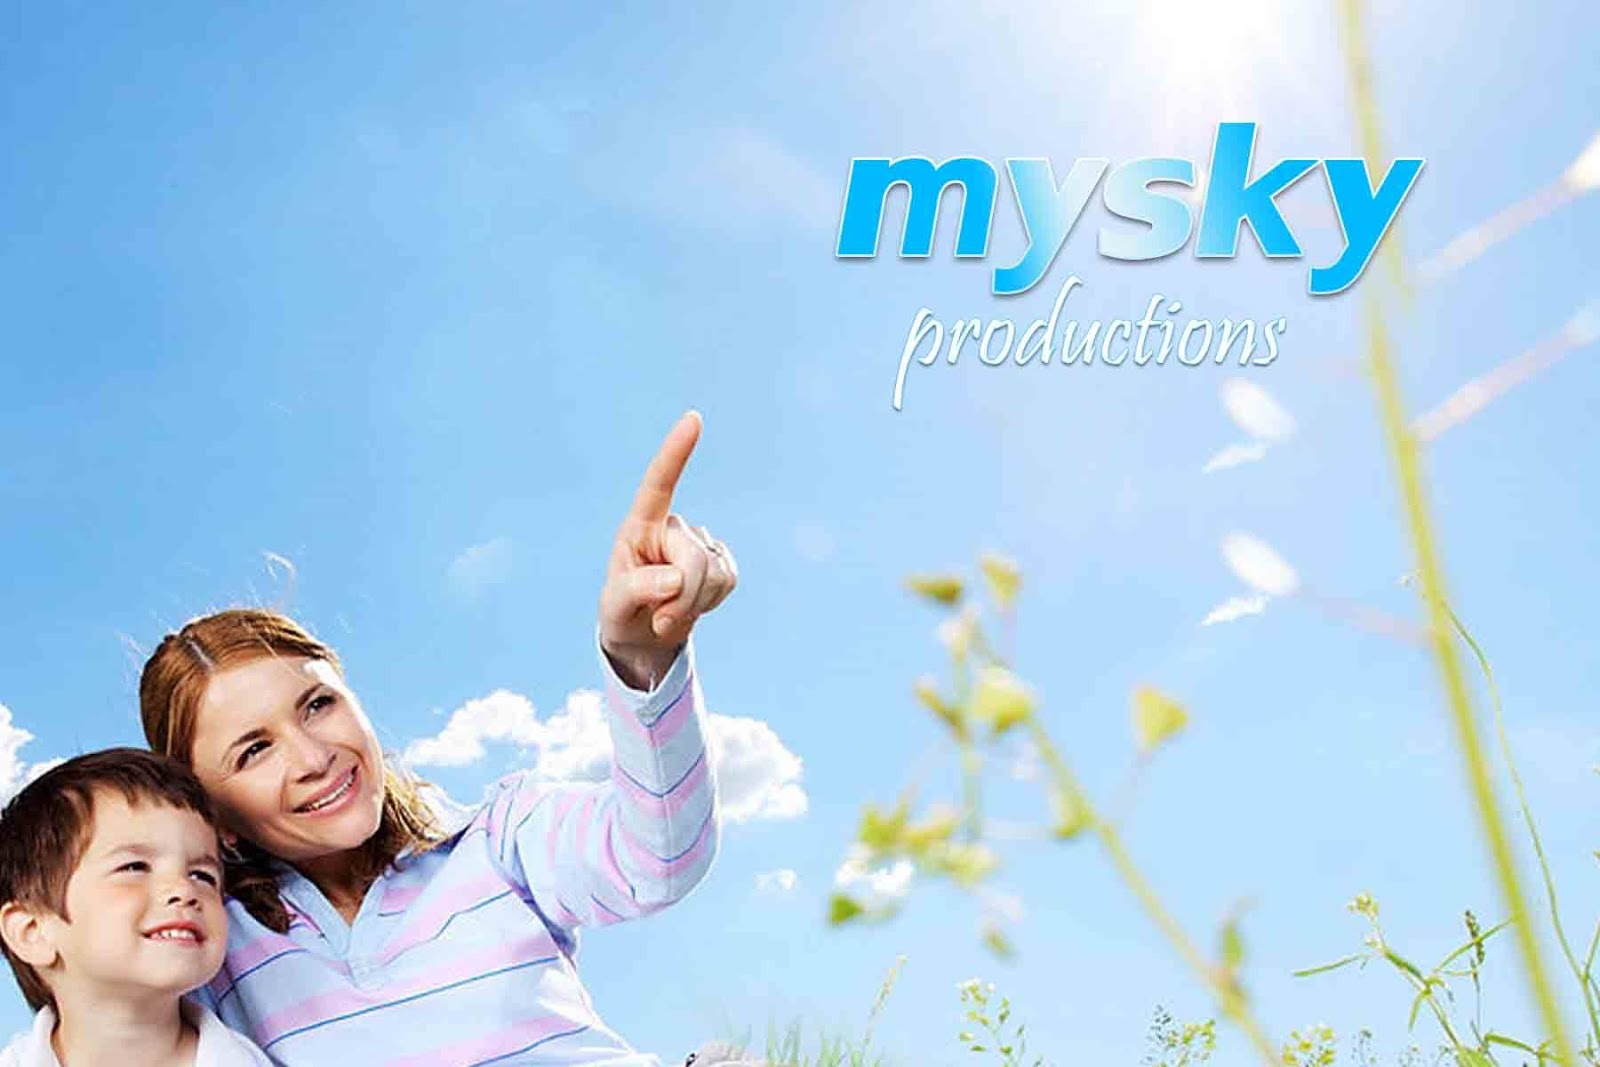 MYSKY Productions